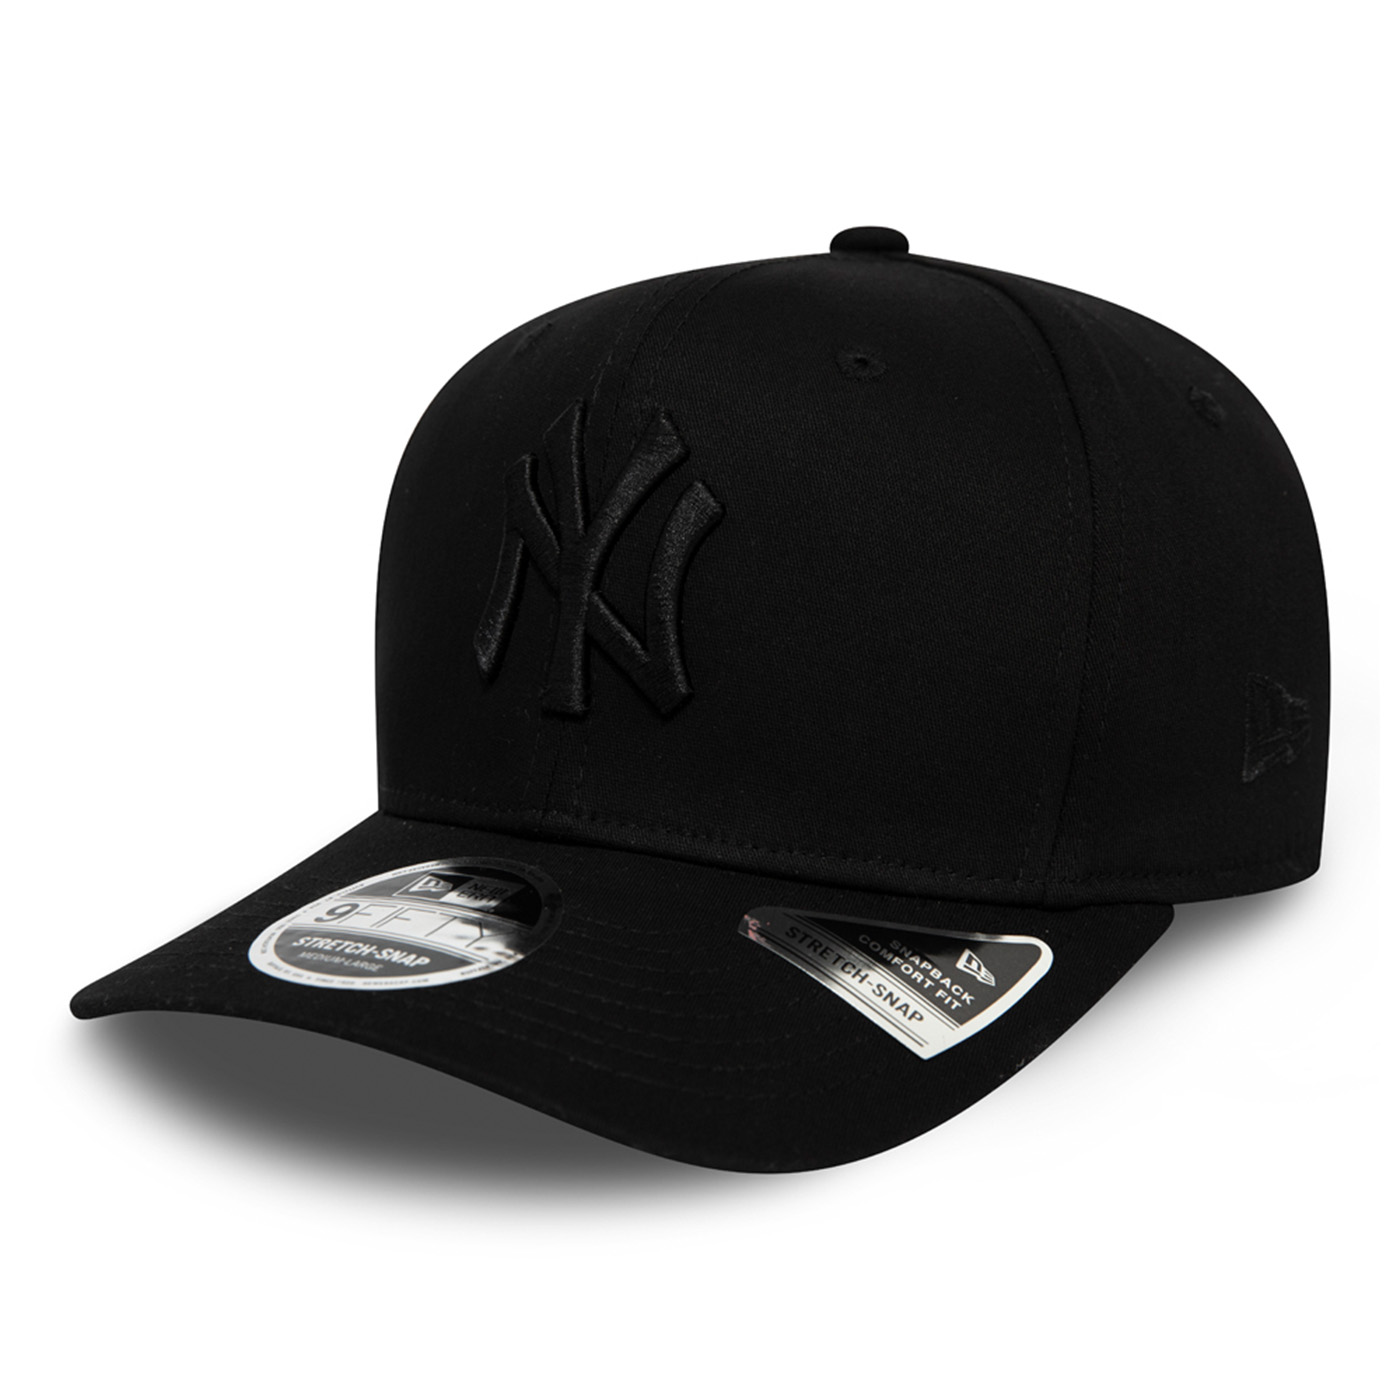 New Era 9FIFTY NY Yankees Cap Black